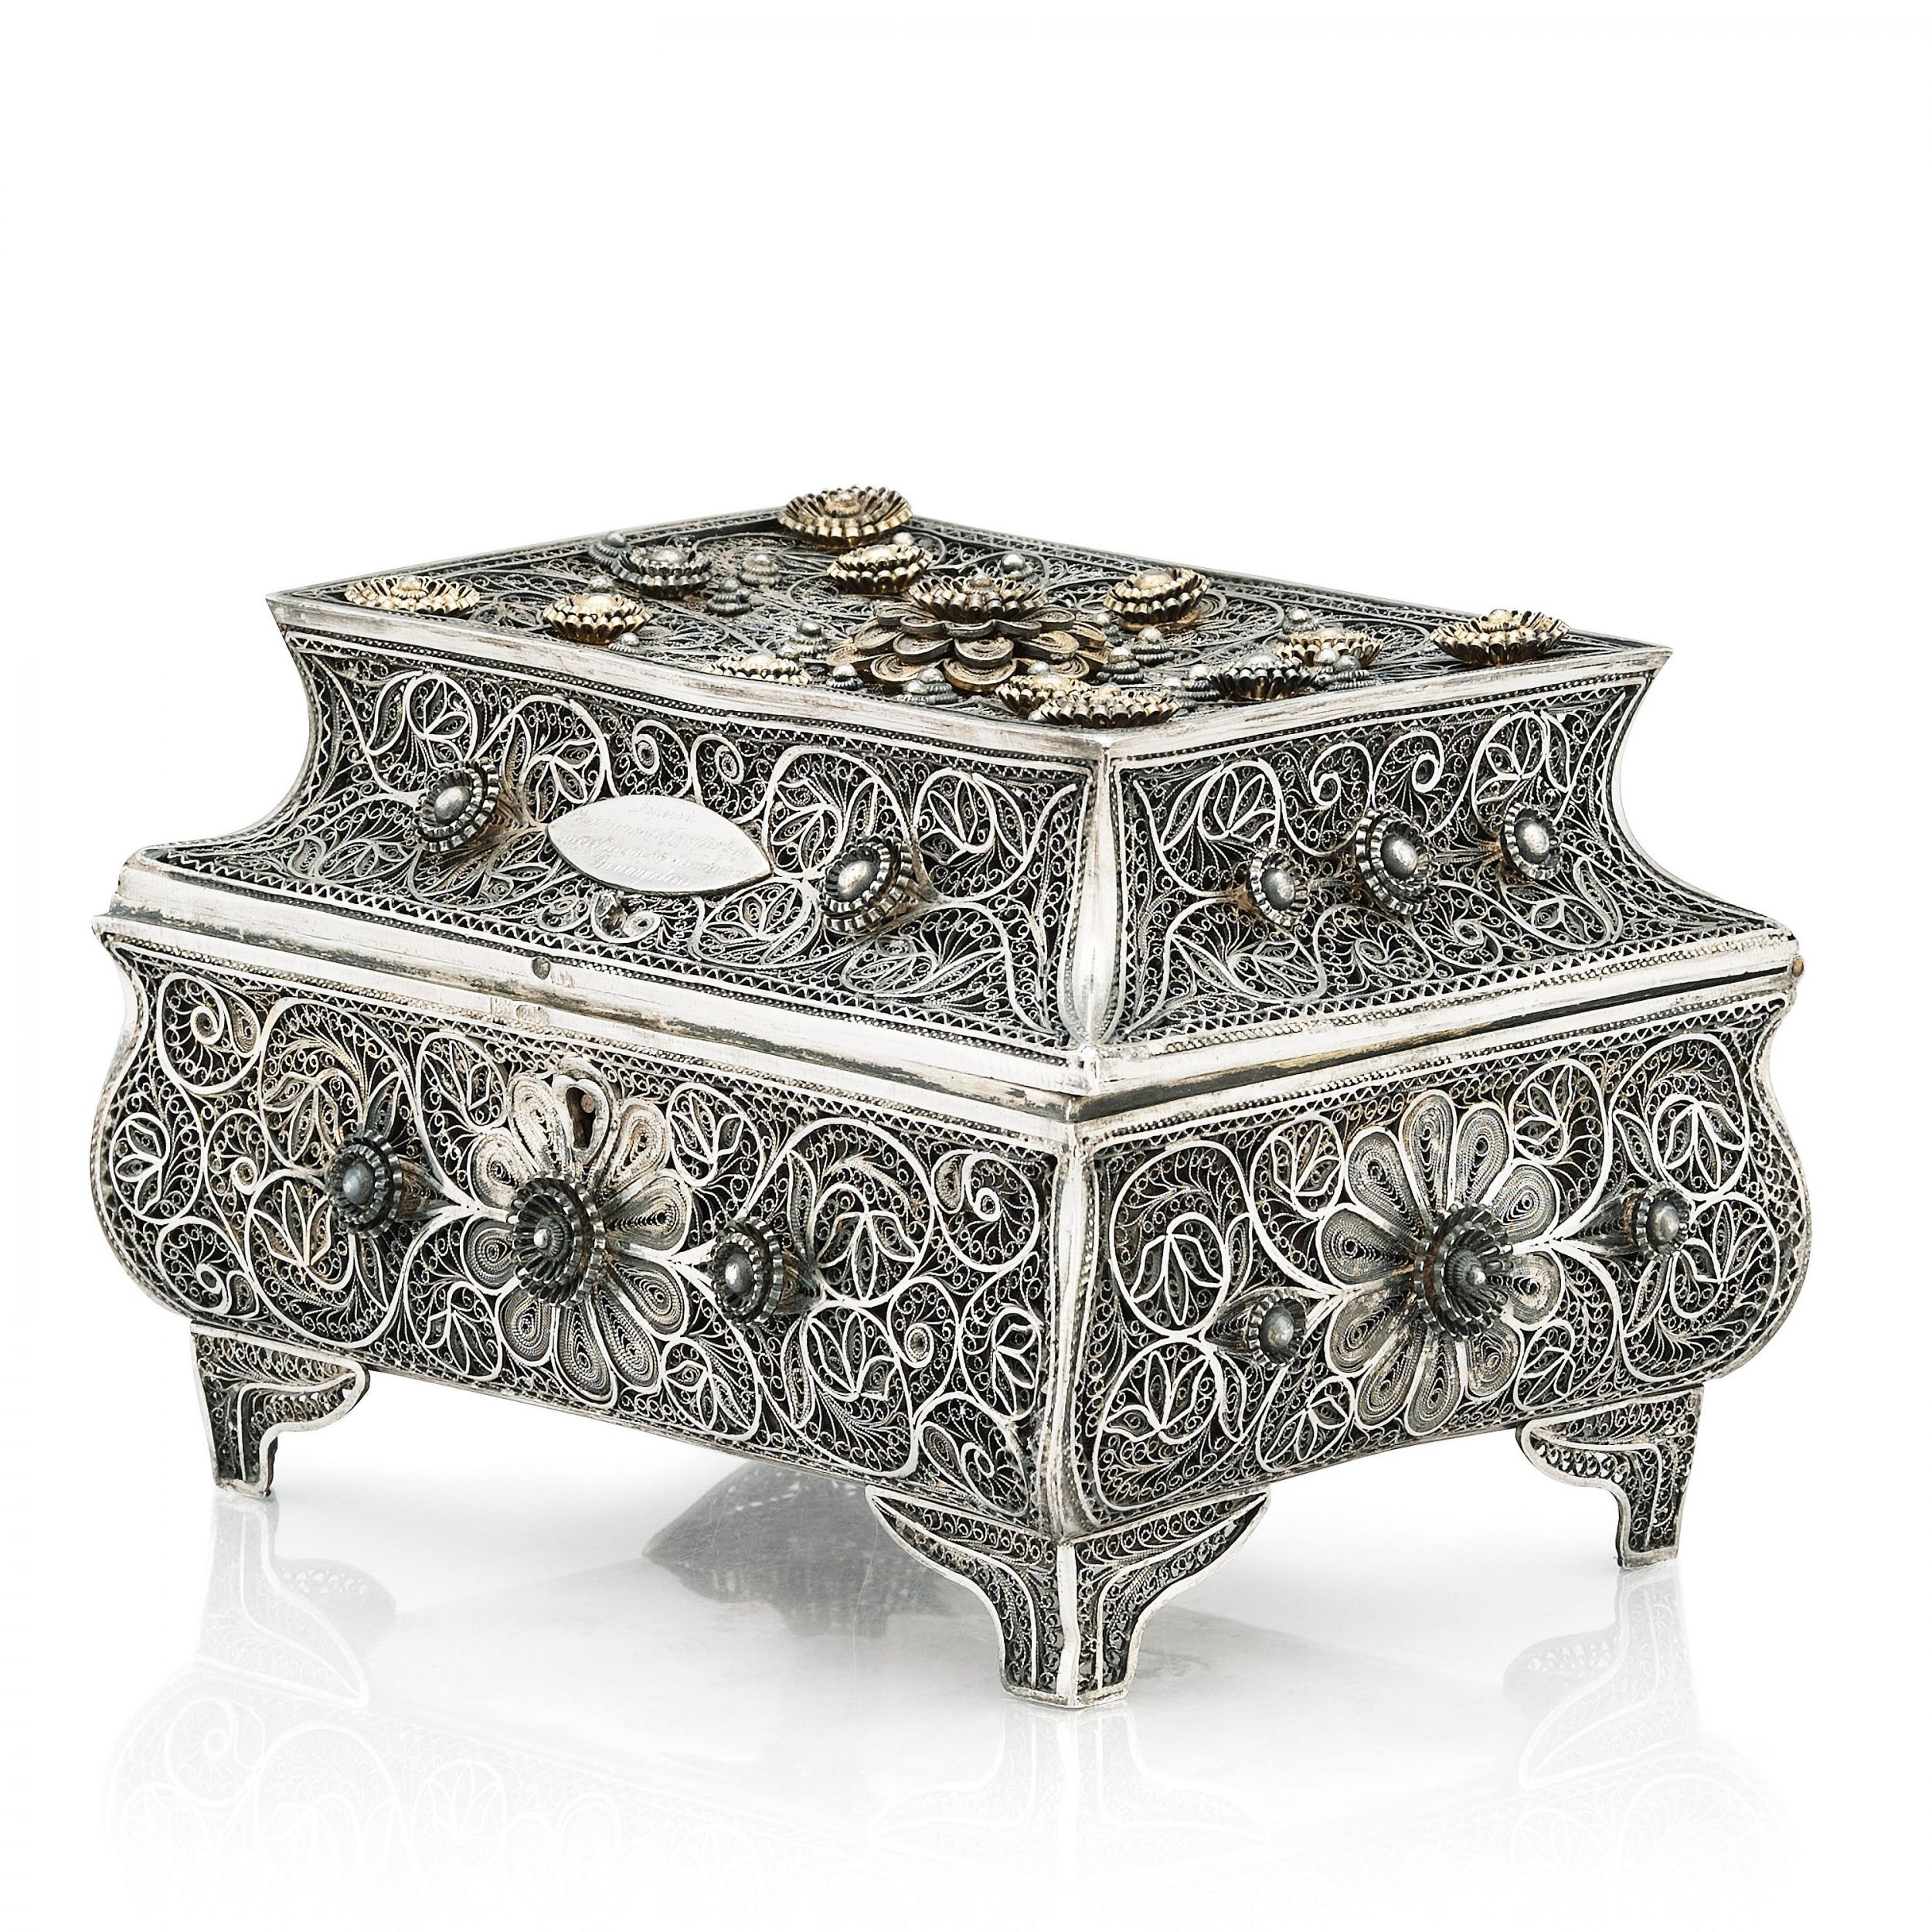 Silver-filigree-box-of-the-19th-century-Odessa-Russian-Empire-1898-1908-